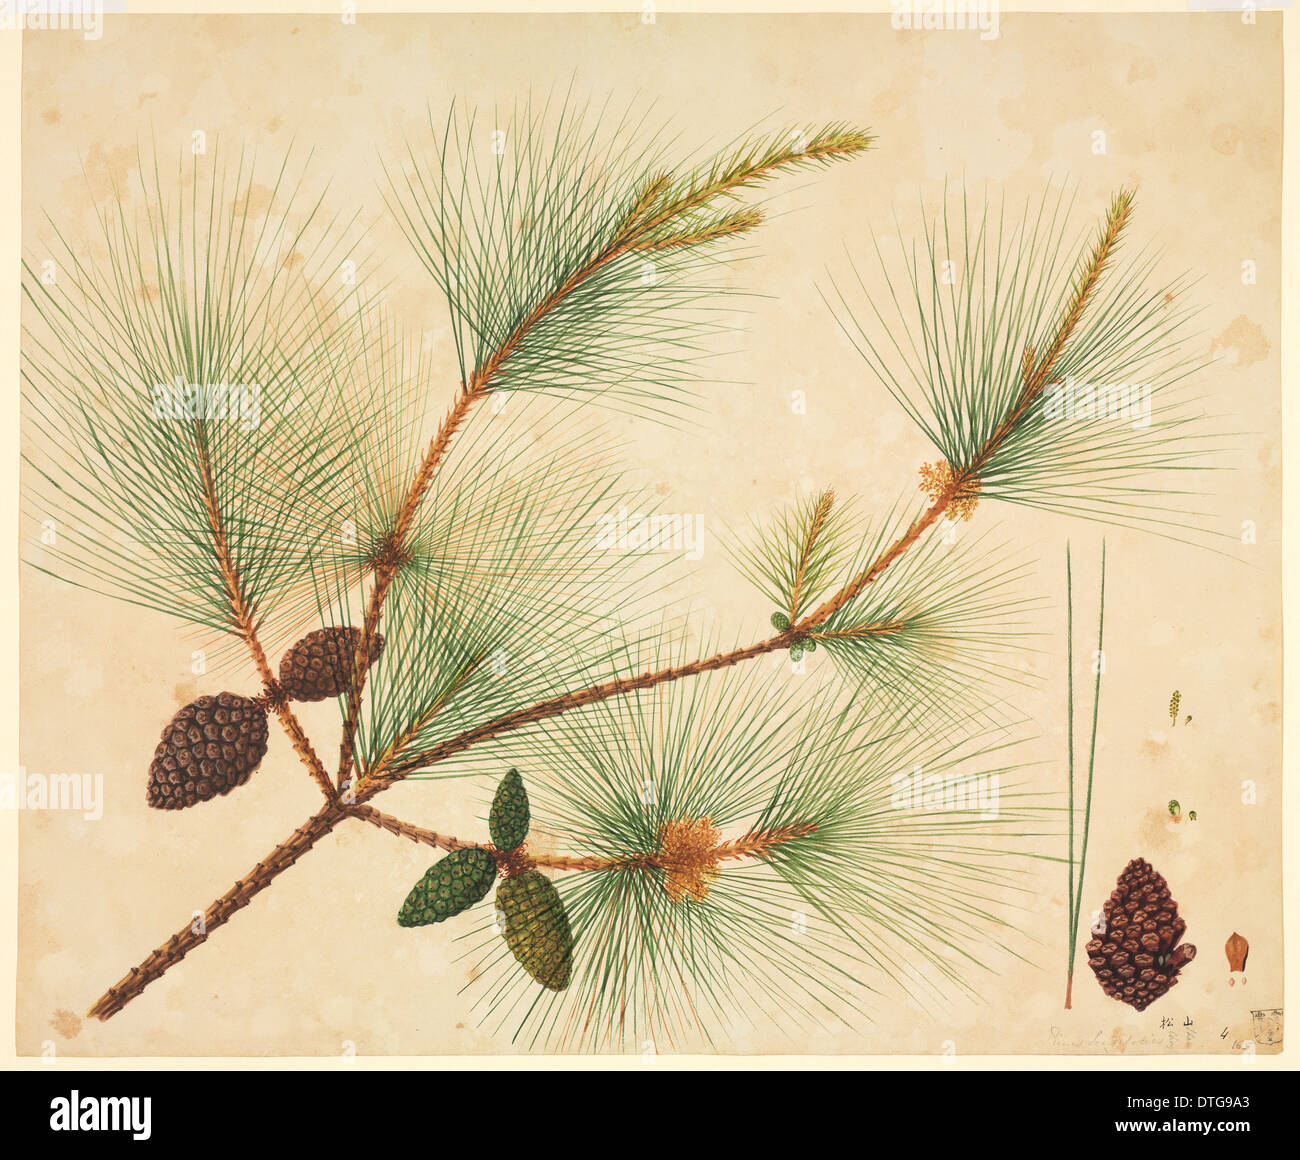 Pinus wallichiana, pine tree Stock Photo